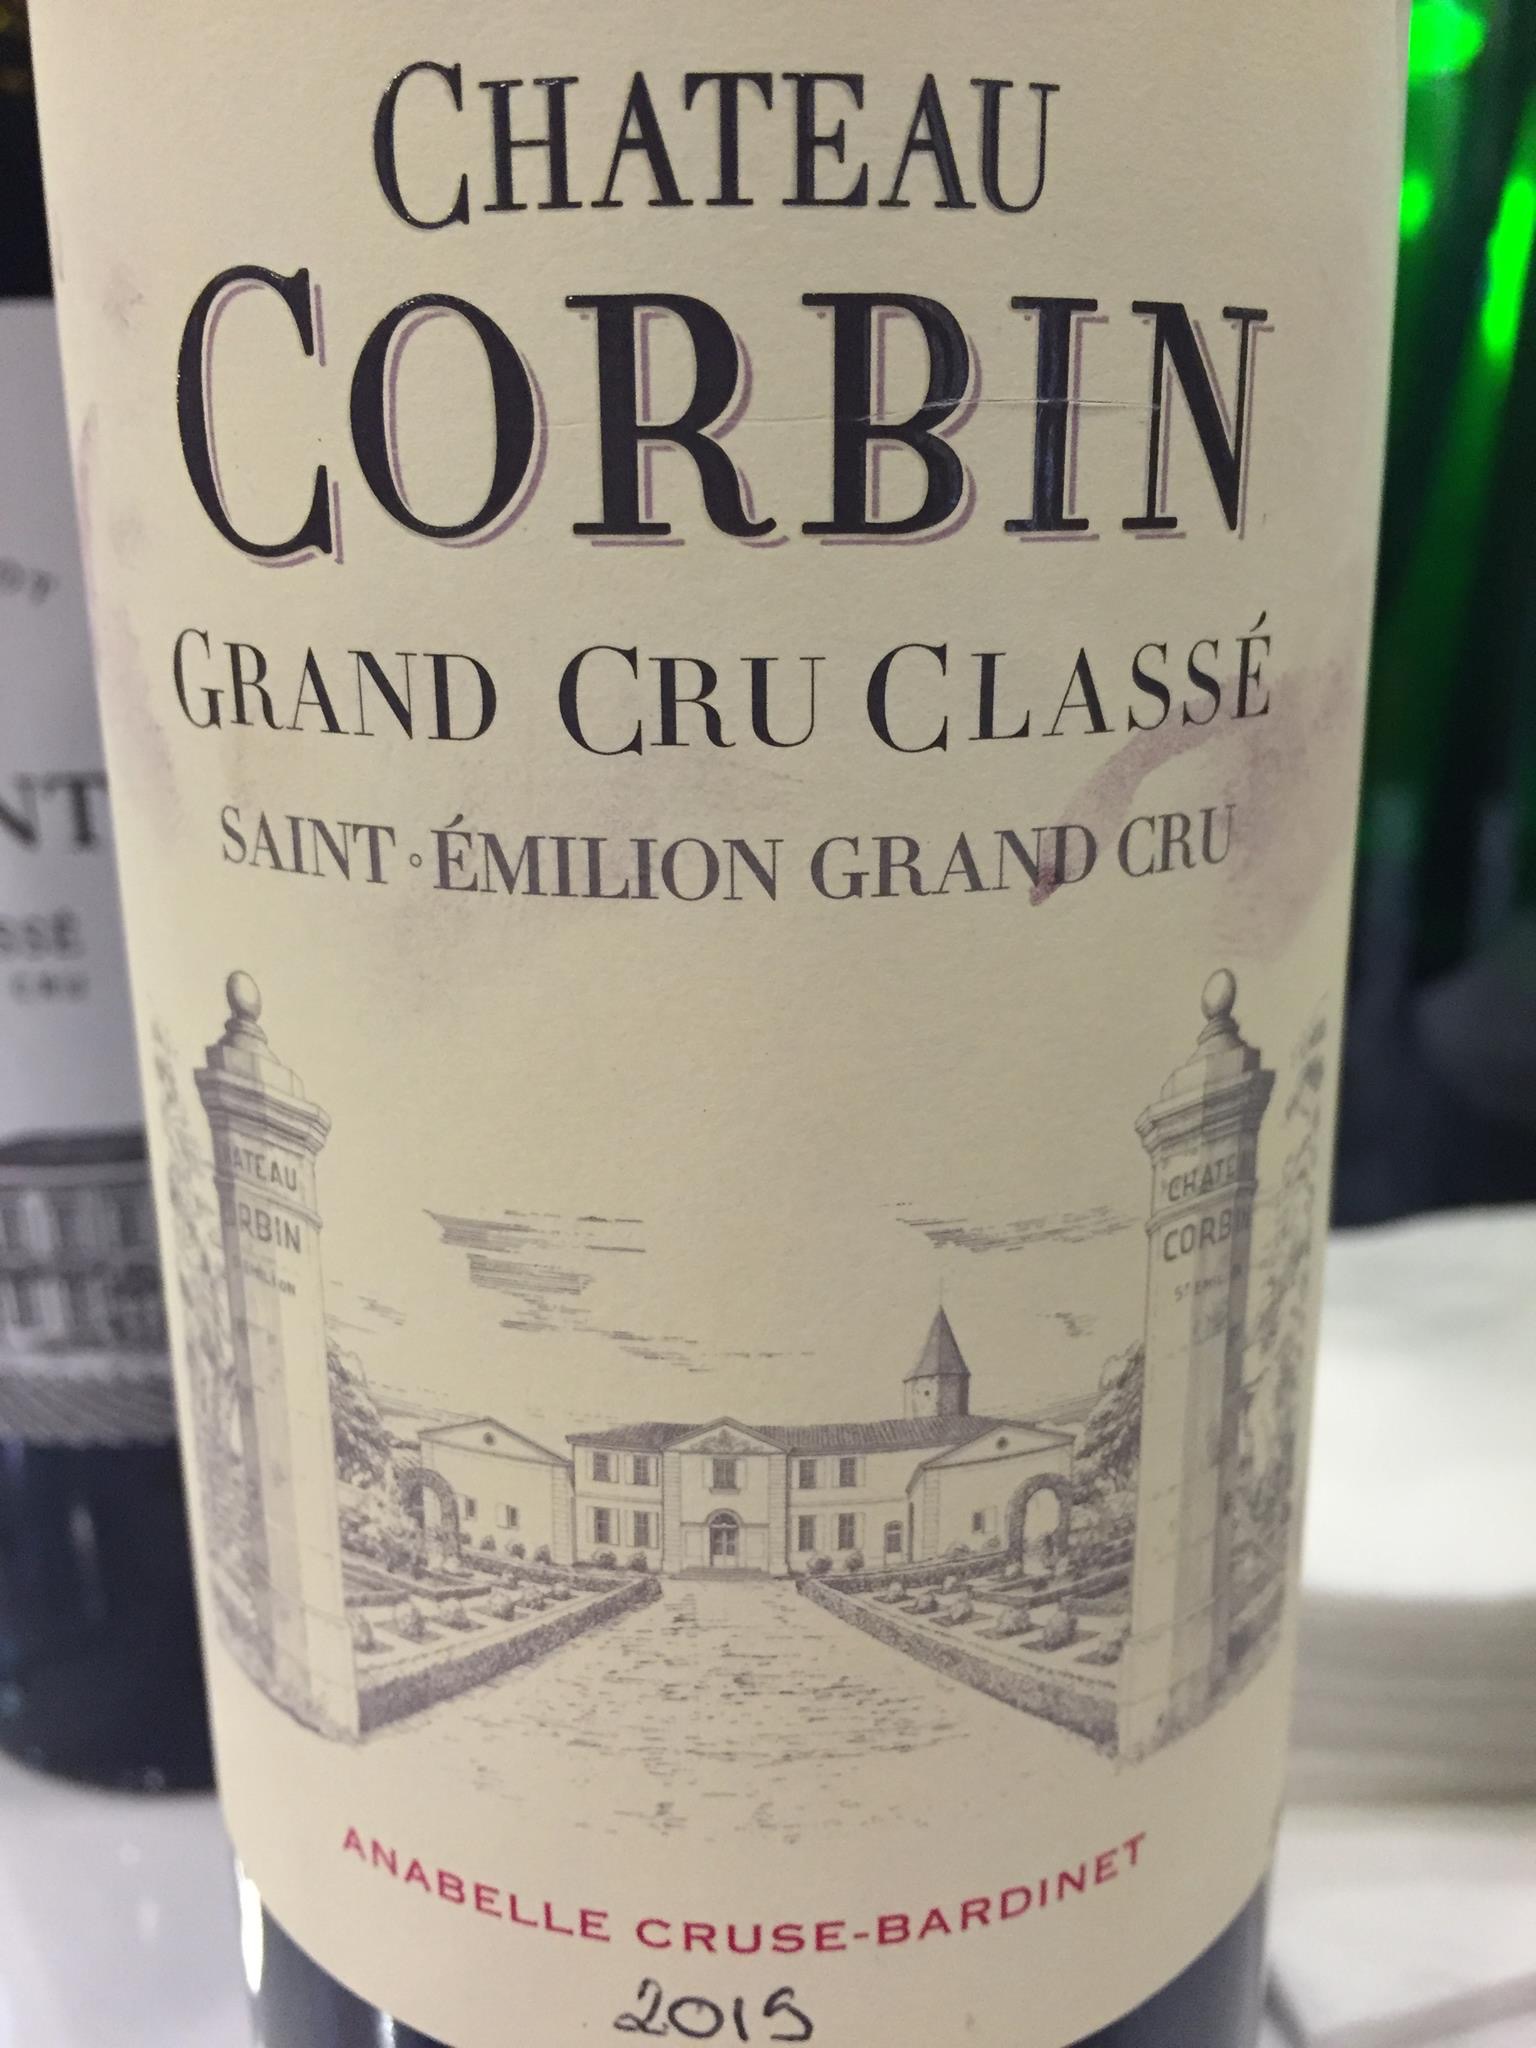 Château Corbin 2015 – Saint-Emilion Grand Cru, Grand Cru Classé